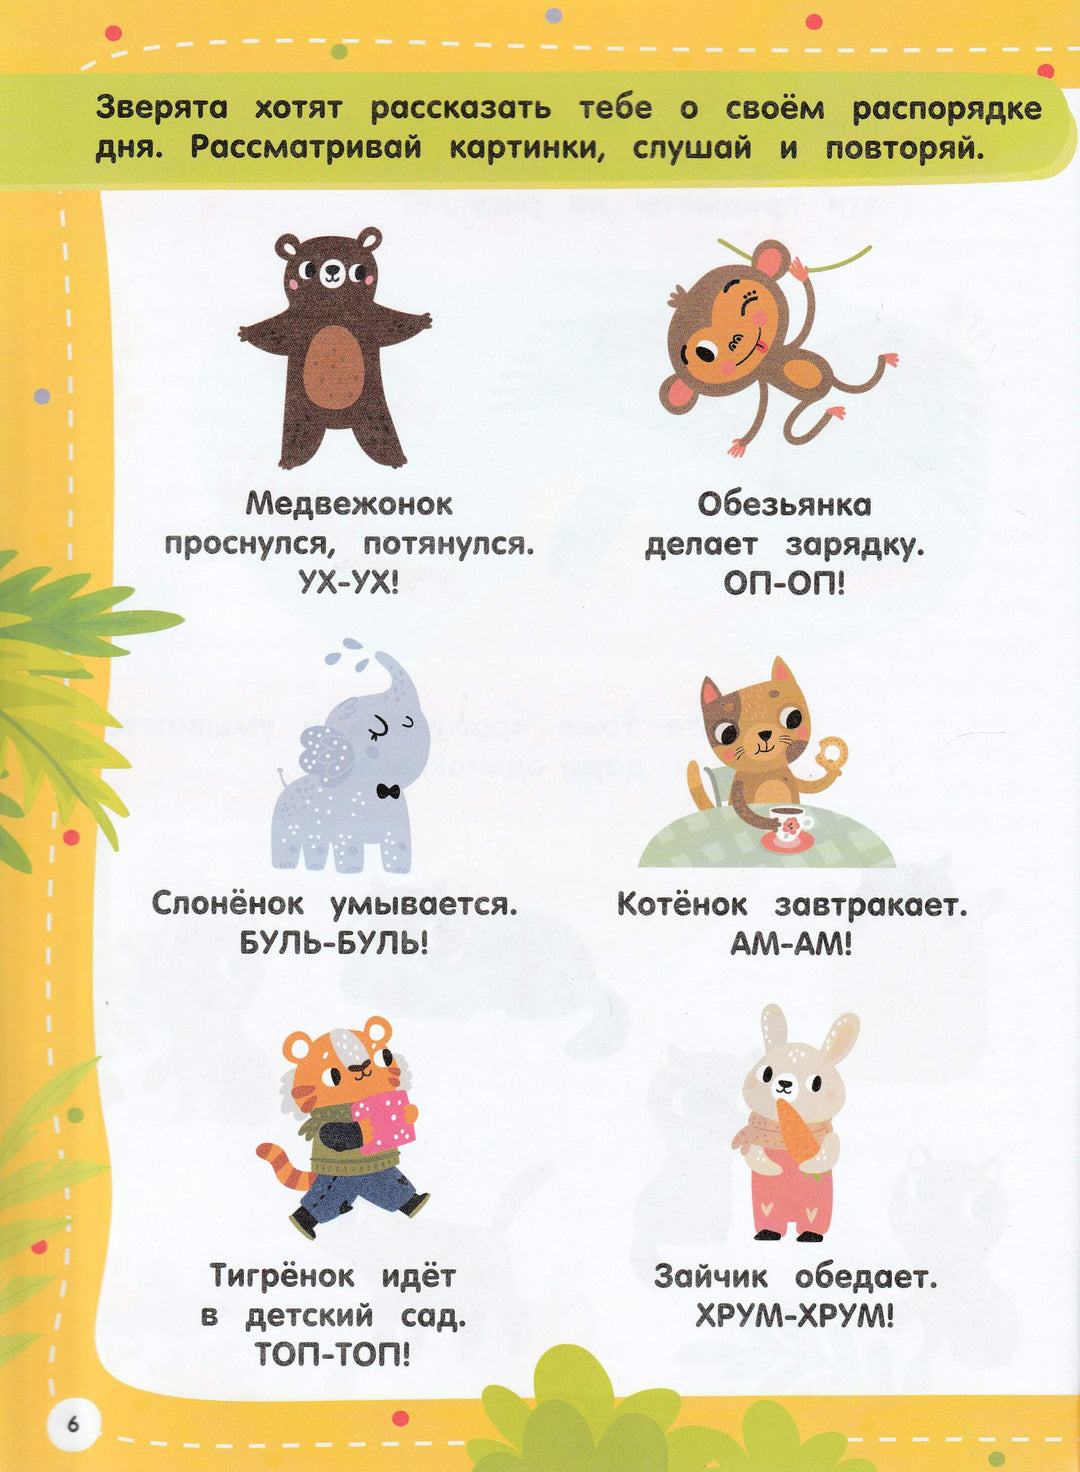 100 заданий для малышей 3+-Дмитриева В.-Малыш-Lookomorie